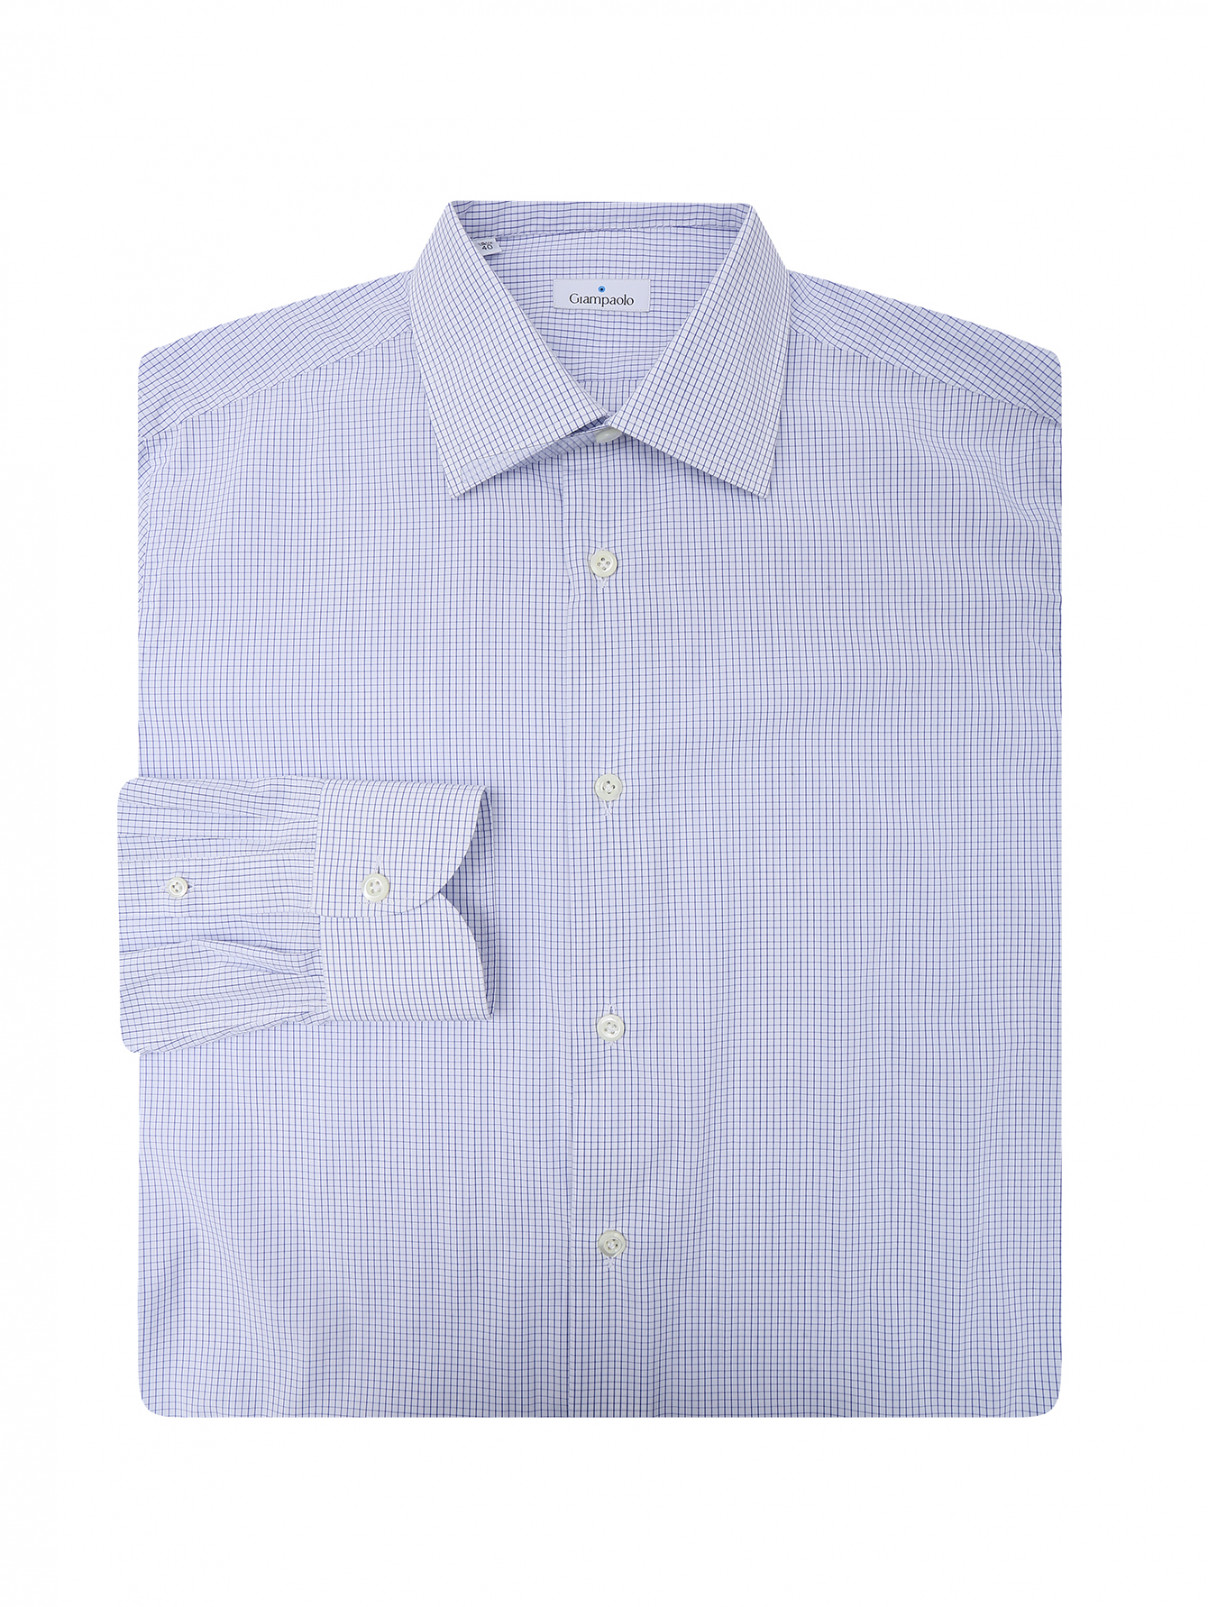 Хлопковая рубашка в клетку Giampaolo  –  Общий вид  – Цвет:  Белый